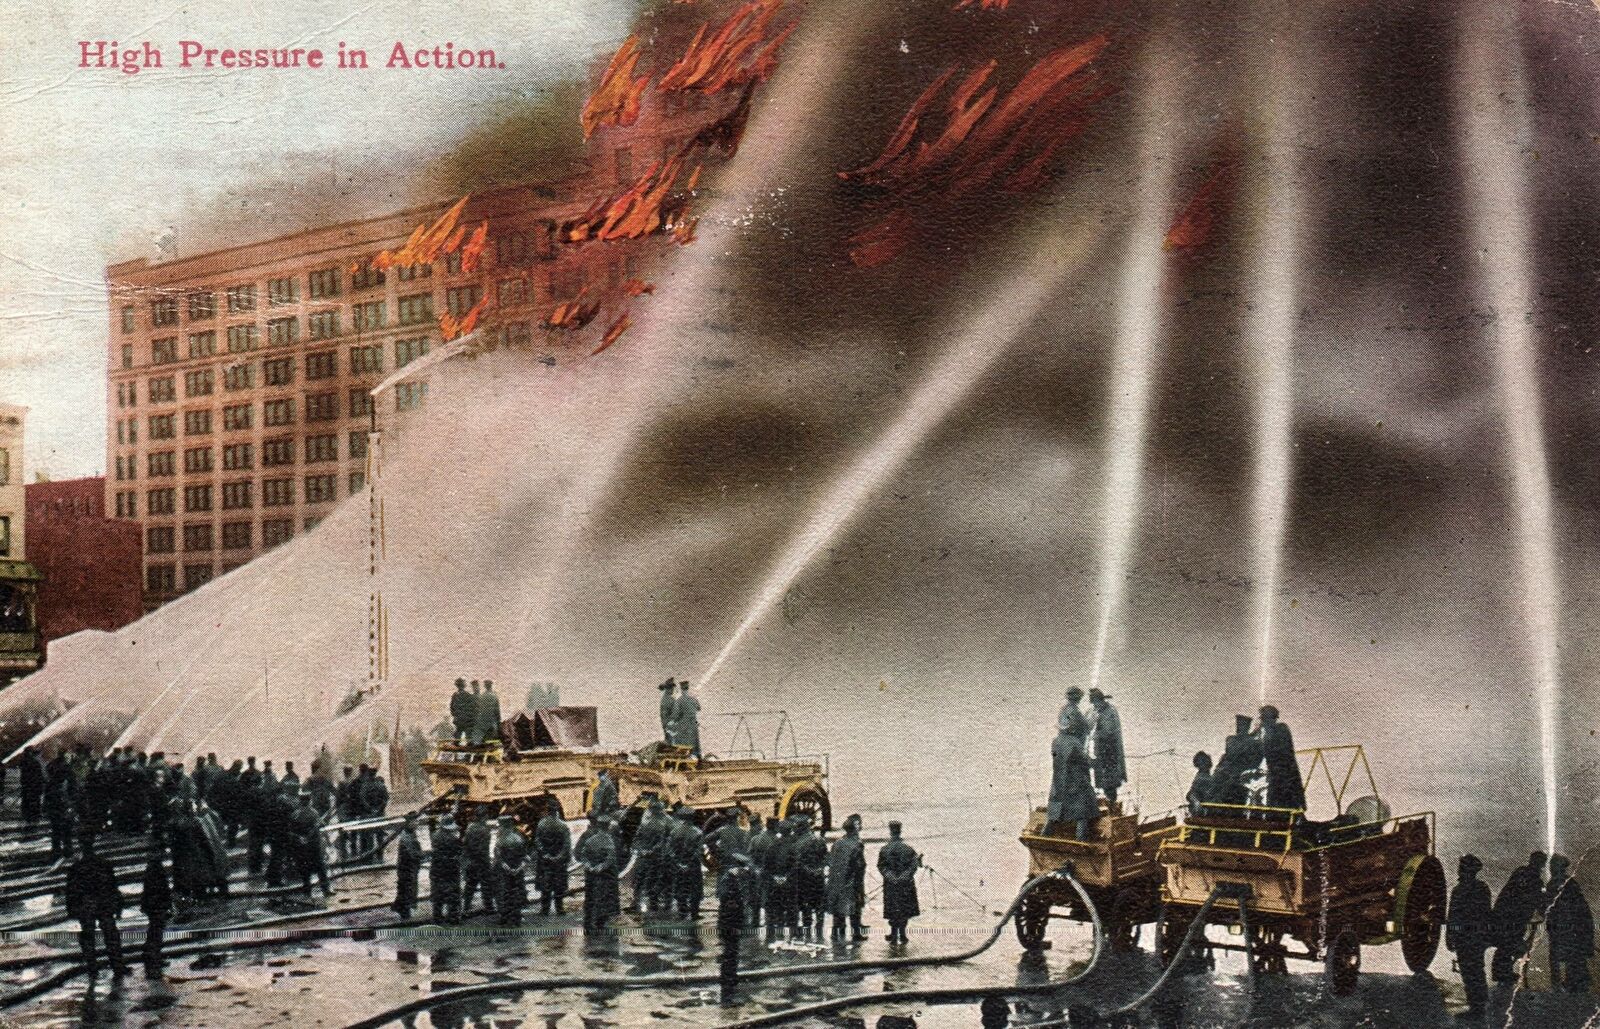 VINTAGE POSTCARD HIGH PRESSURE IN ACTION EARLY FIREFIGHTING BROOKLYN N.Y.  1911